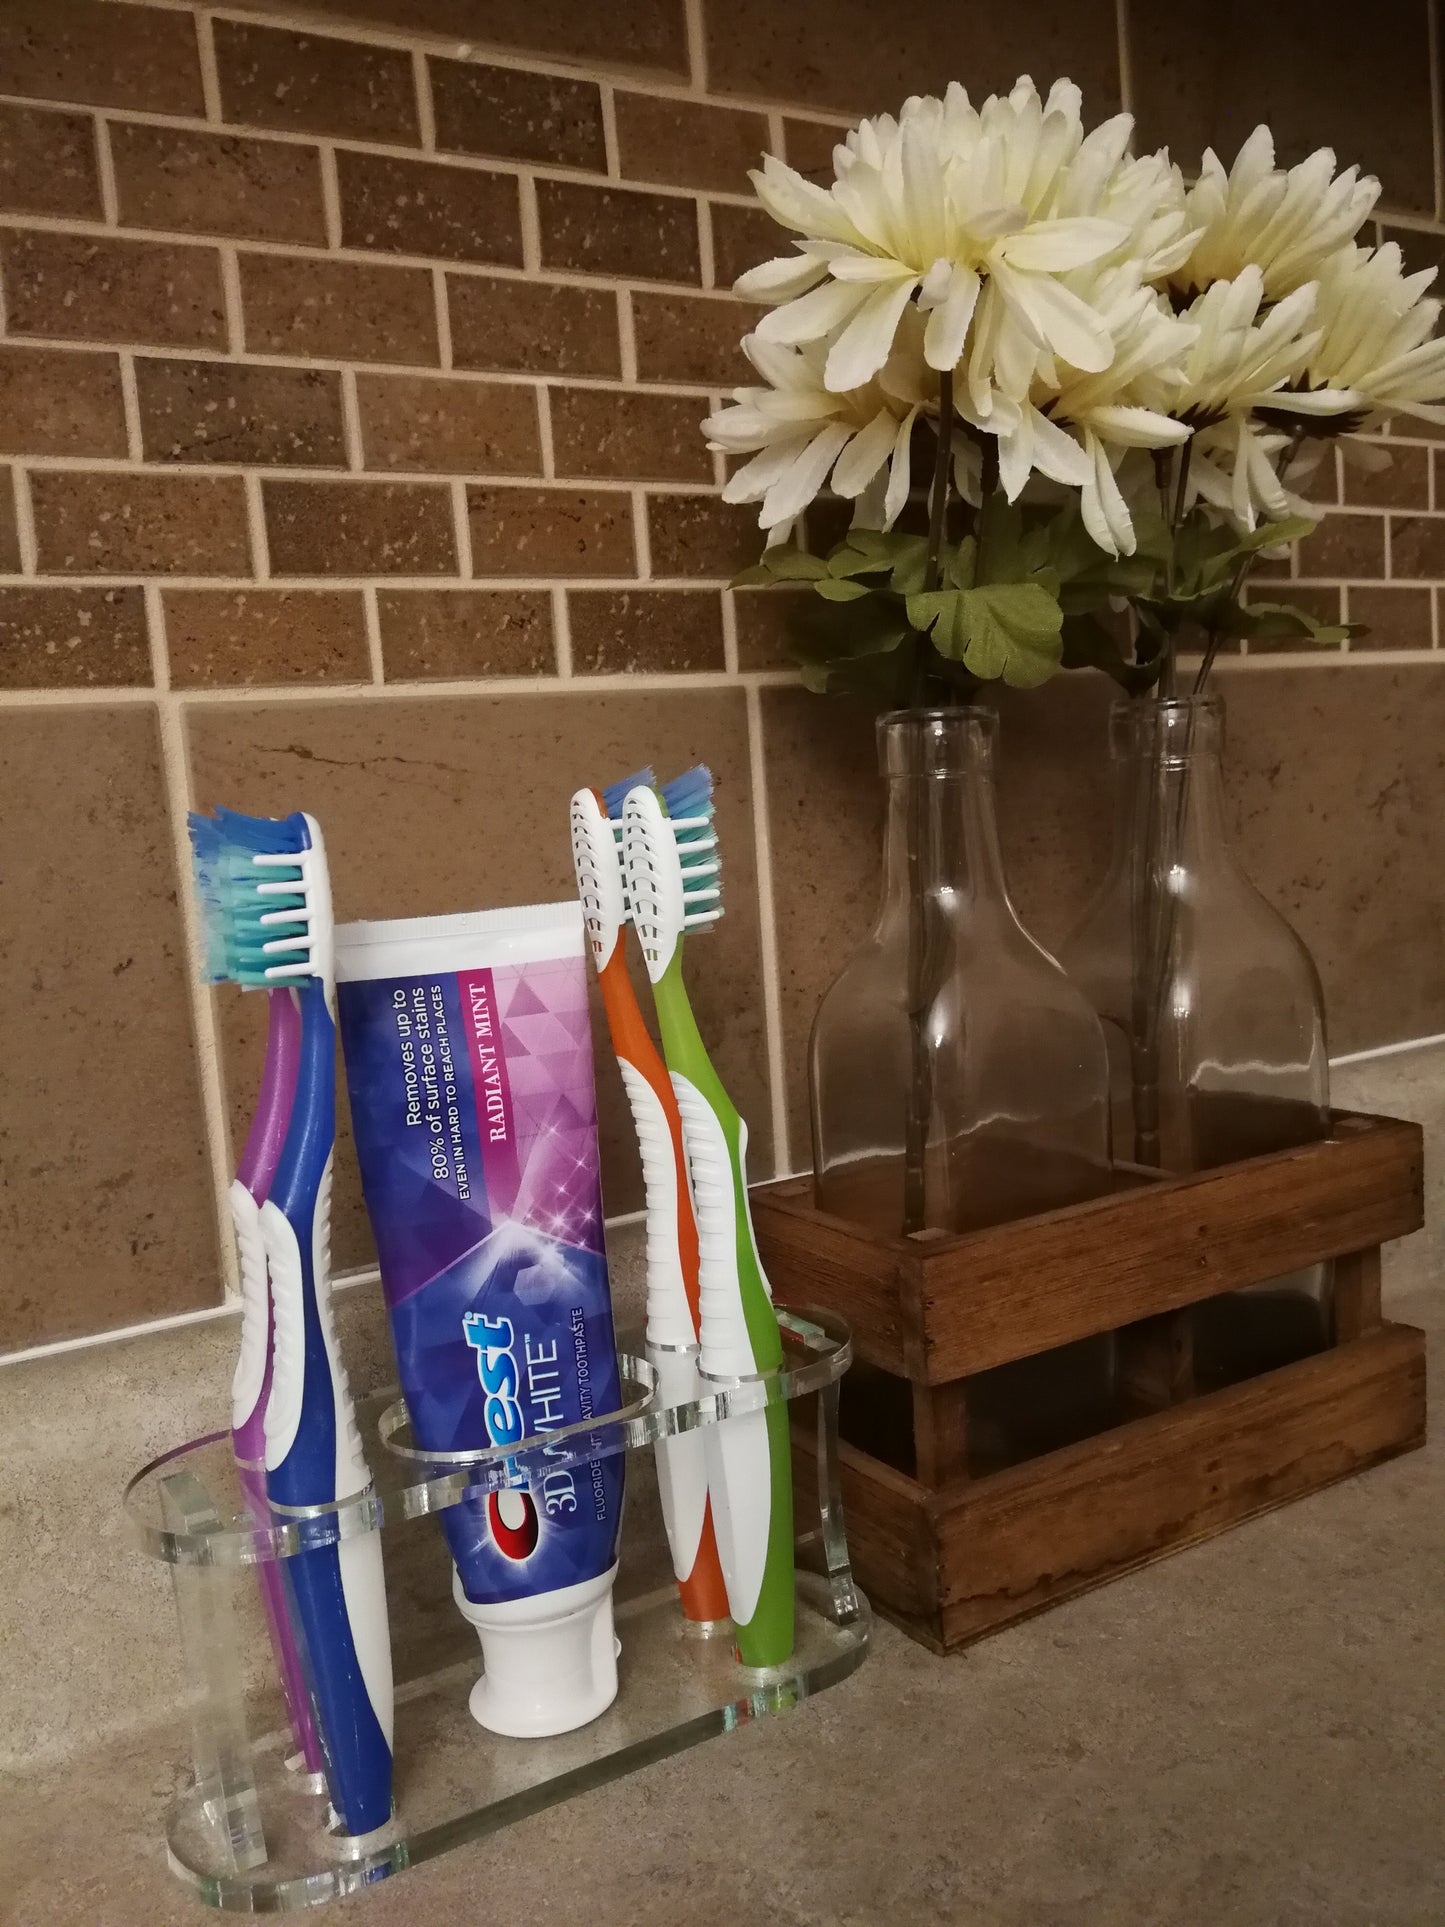 Toothbrush Holder Family of four